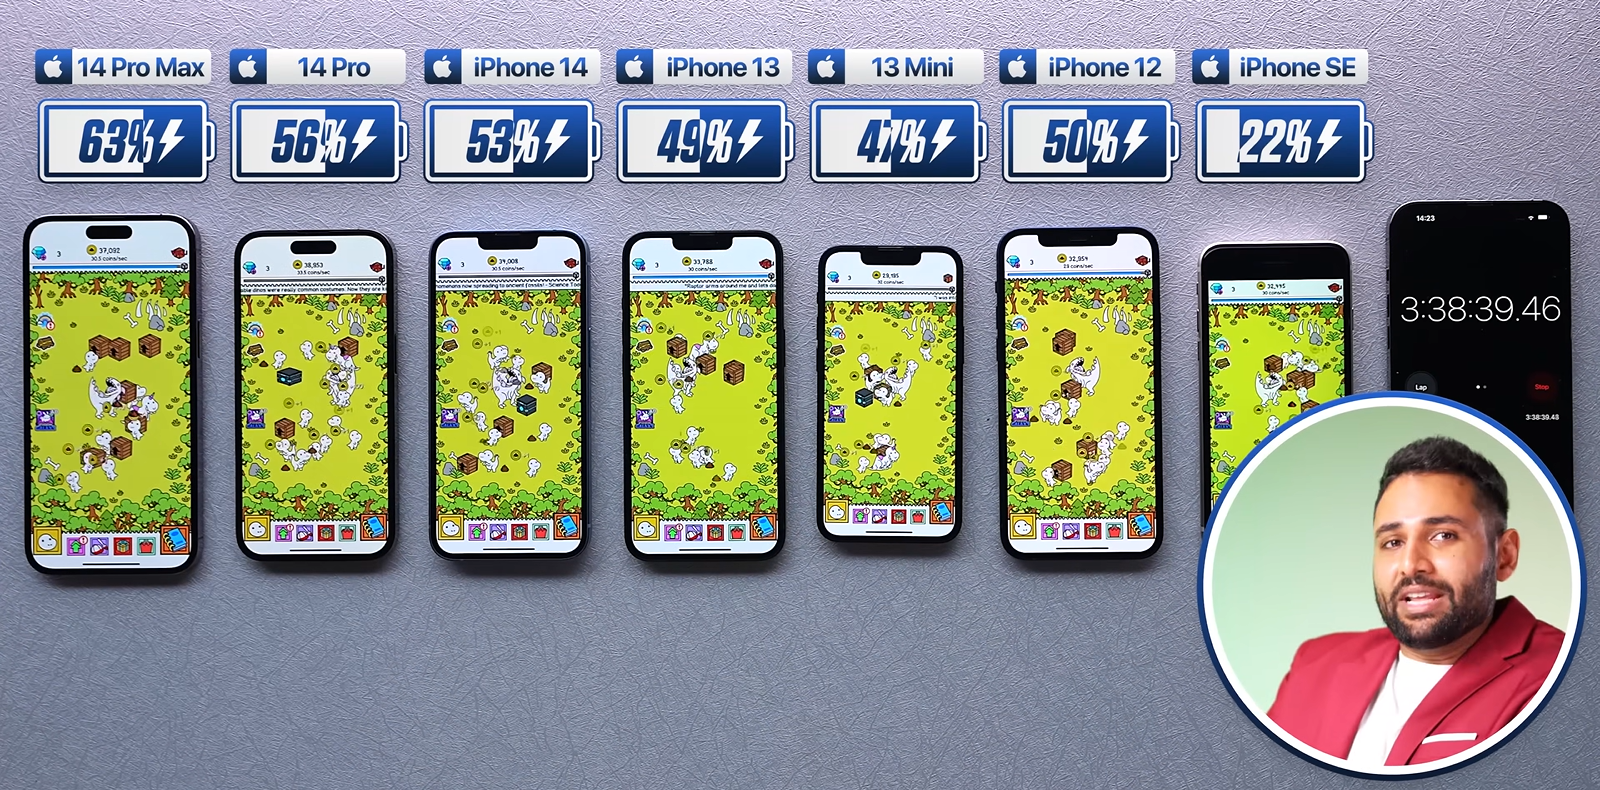 Сравнение 13 mini 12 mini. Модели айфонов. Айфоны по размерам. Iphone 14 Pro Max. Айфон 13 расцветки.